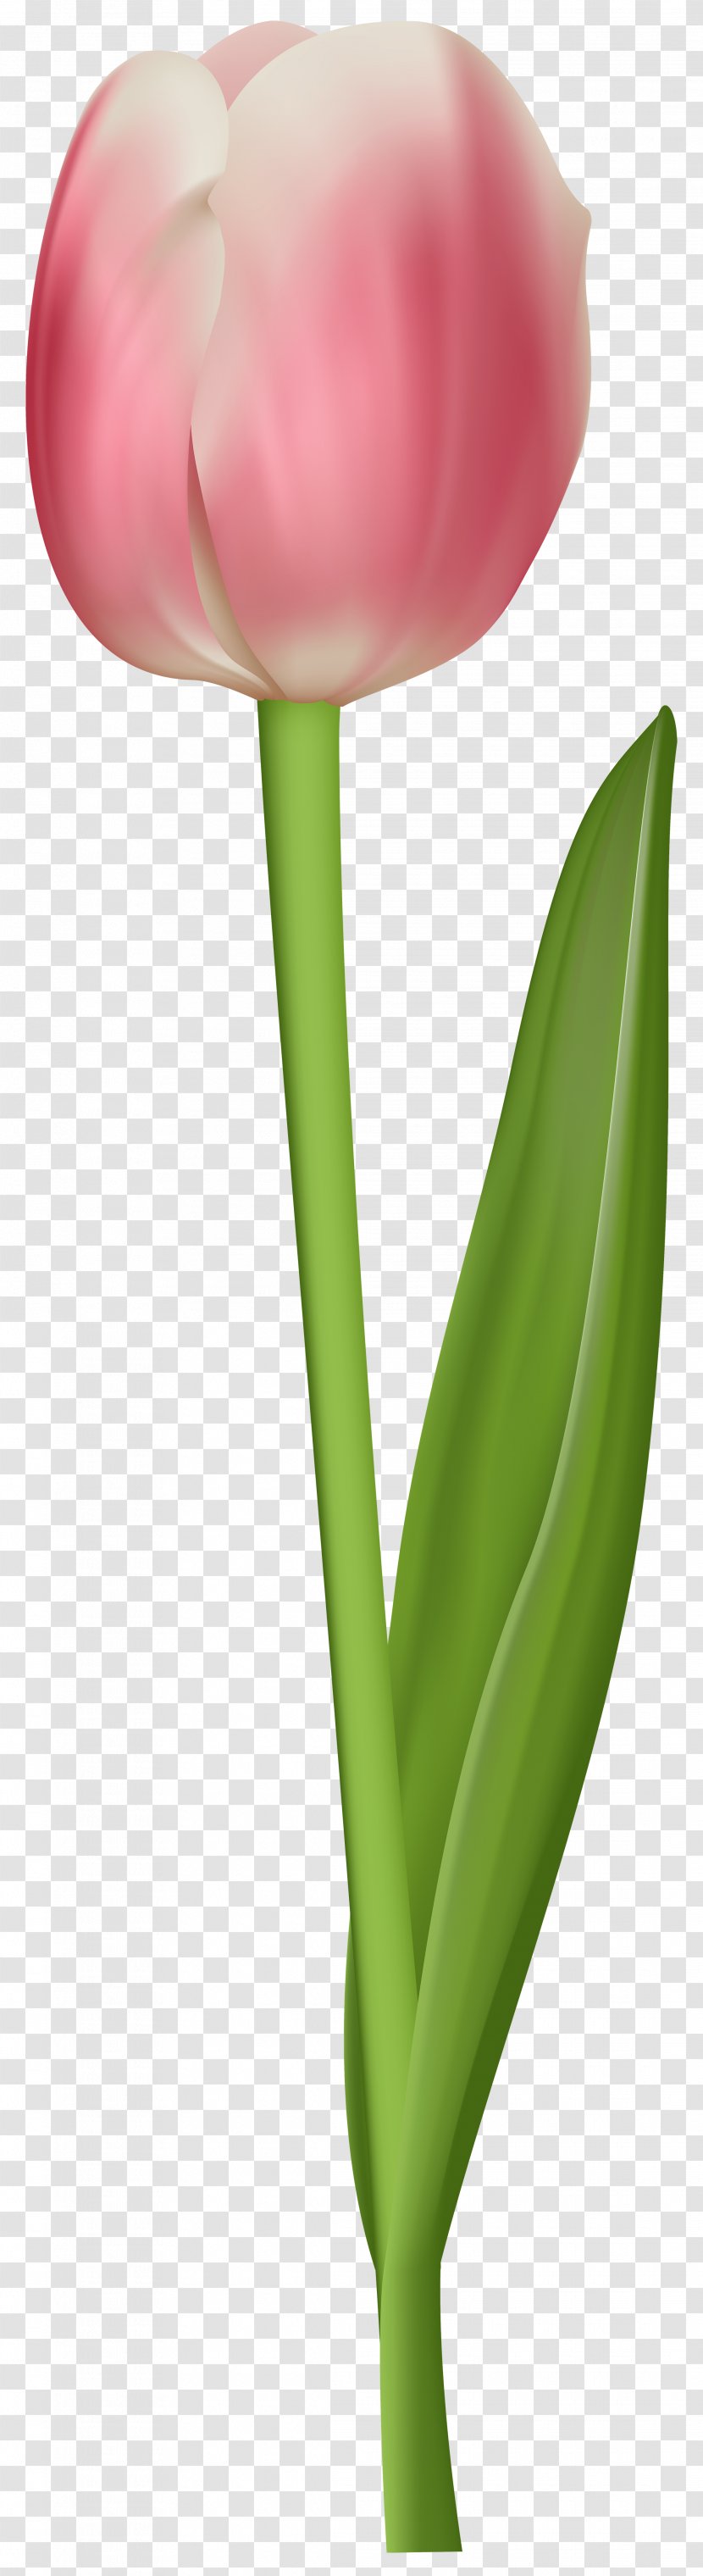 Tulip Petal Plant Stem - Transparent Clip Art Image Transparent PNG